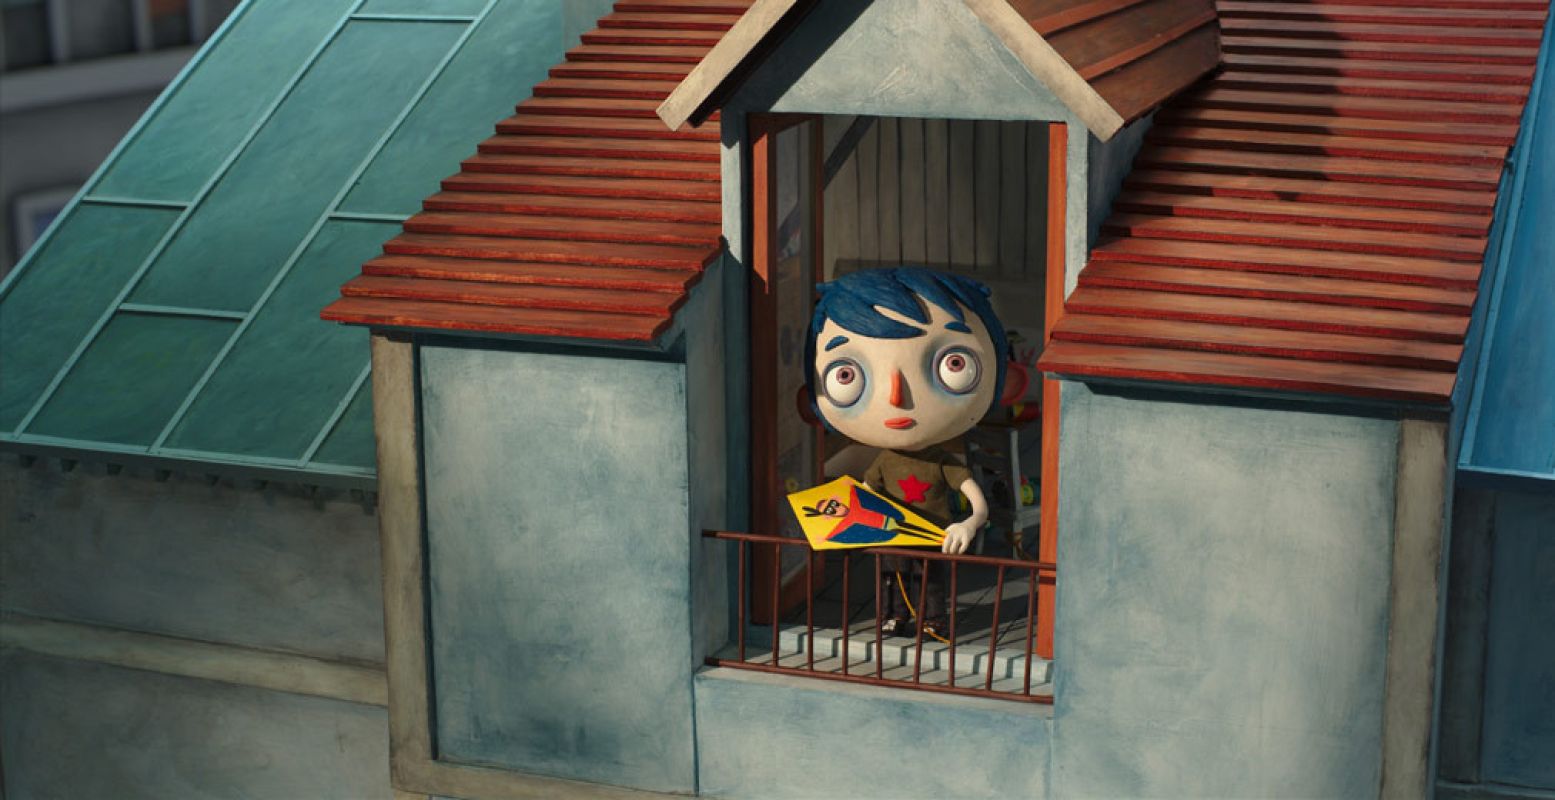 Speelse animatiefilm over Courgette, die in een weeshuis ondanks alles liefde en vriendschap leert kennen. Deze bekroonde film is de Zwitserse inzending voor de Oscars.